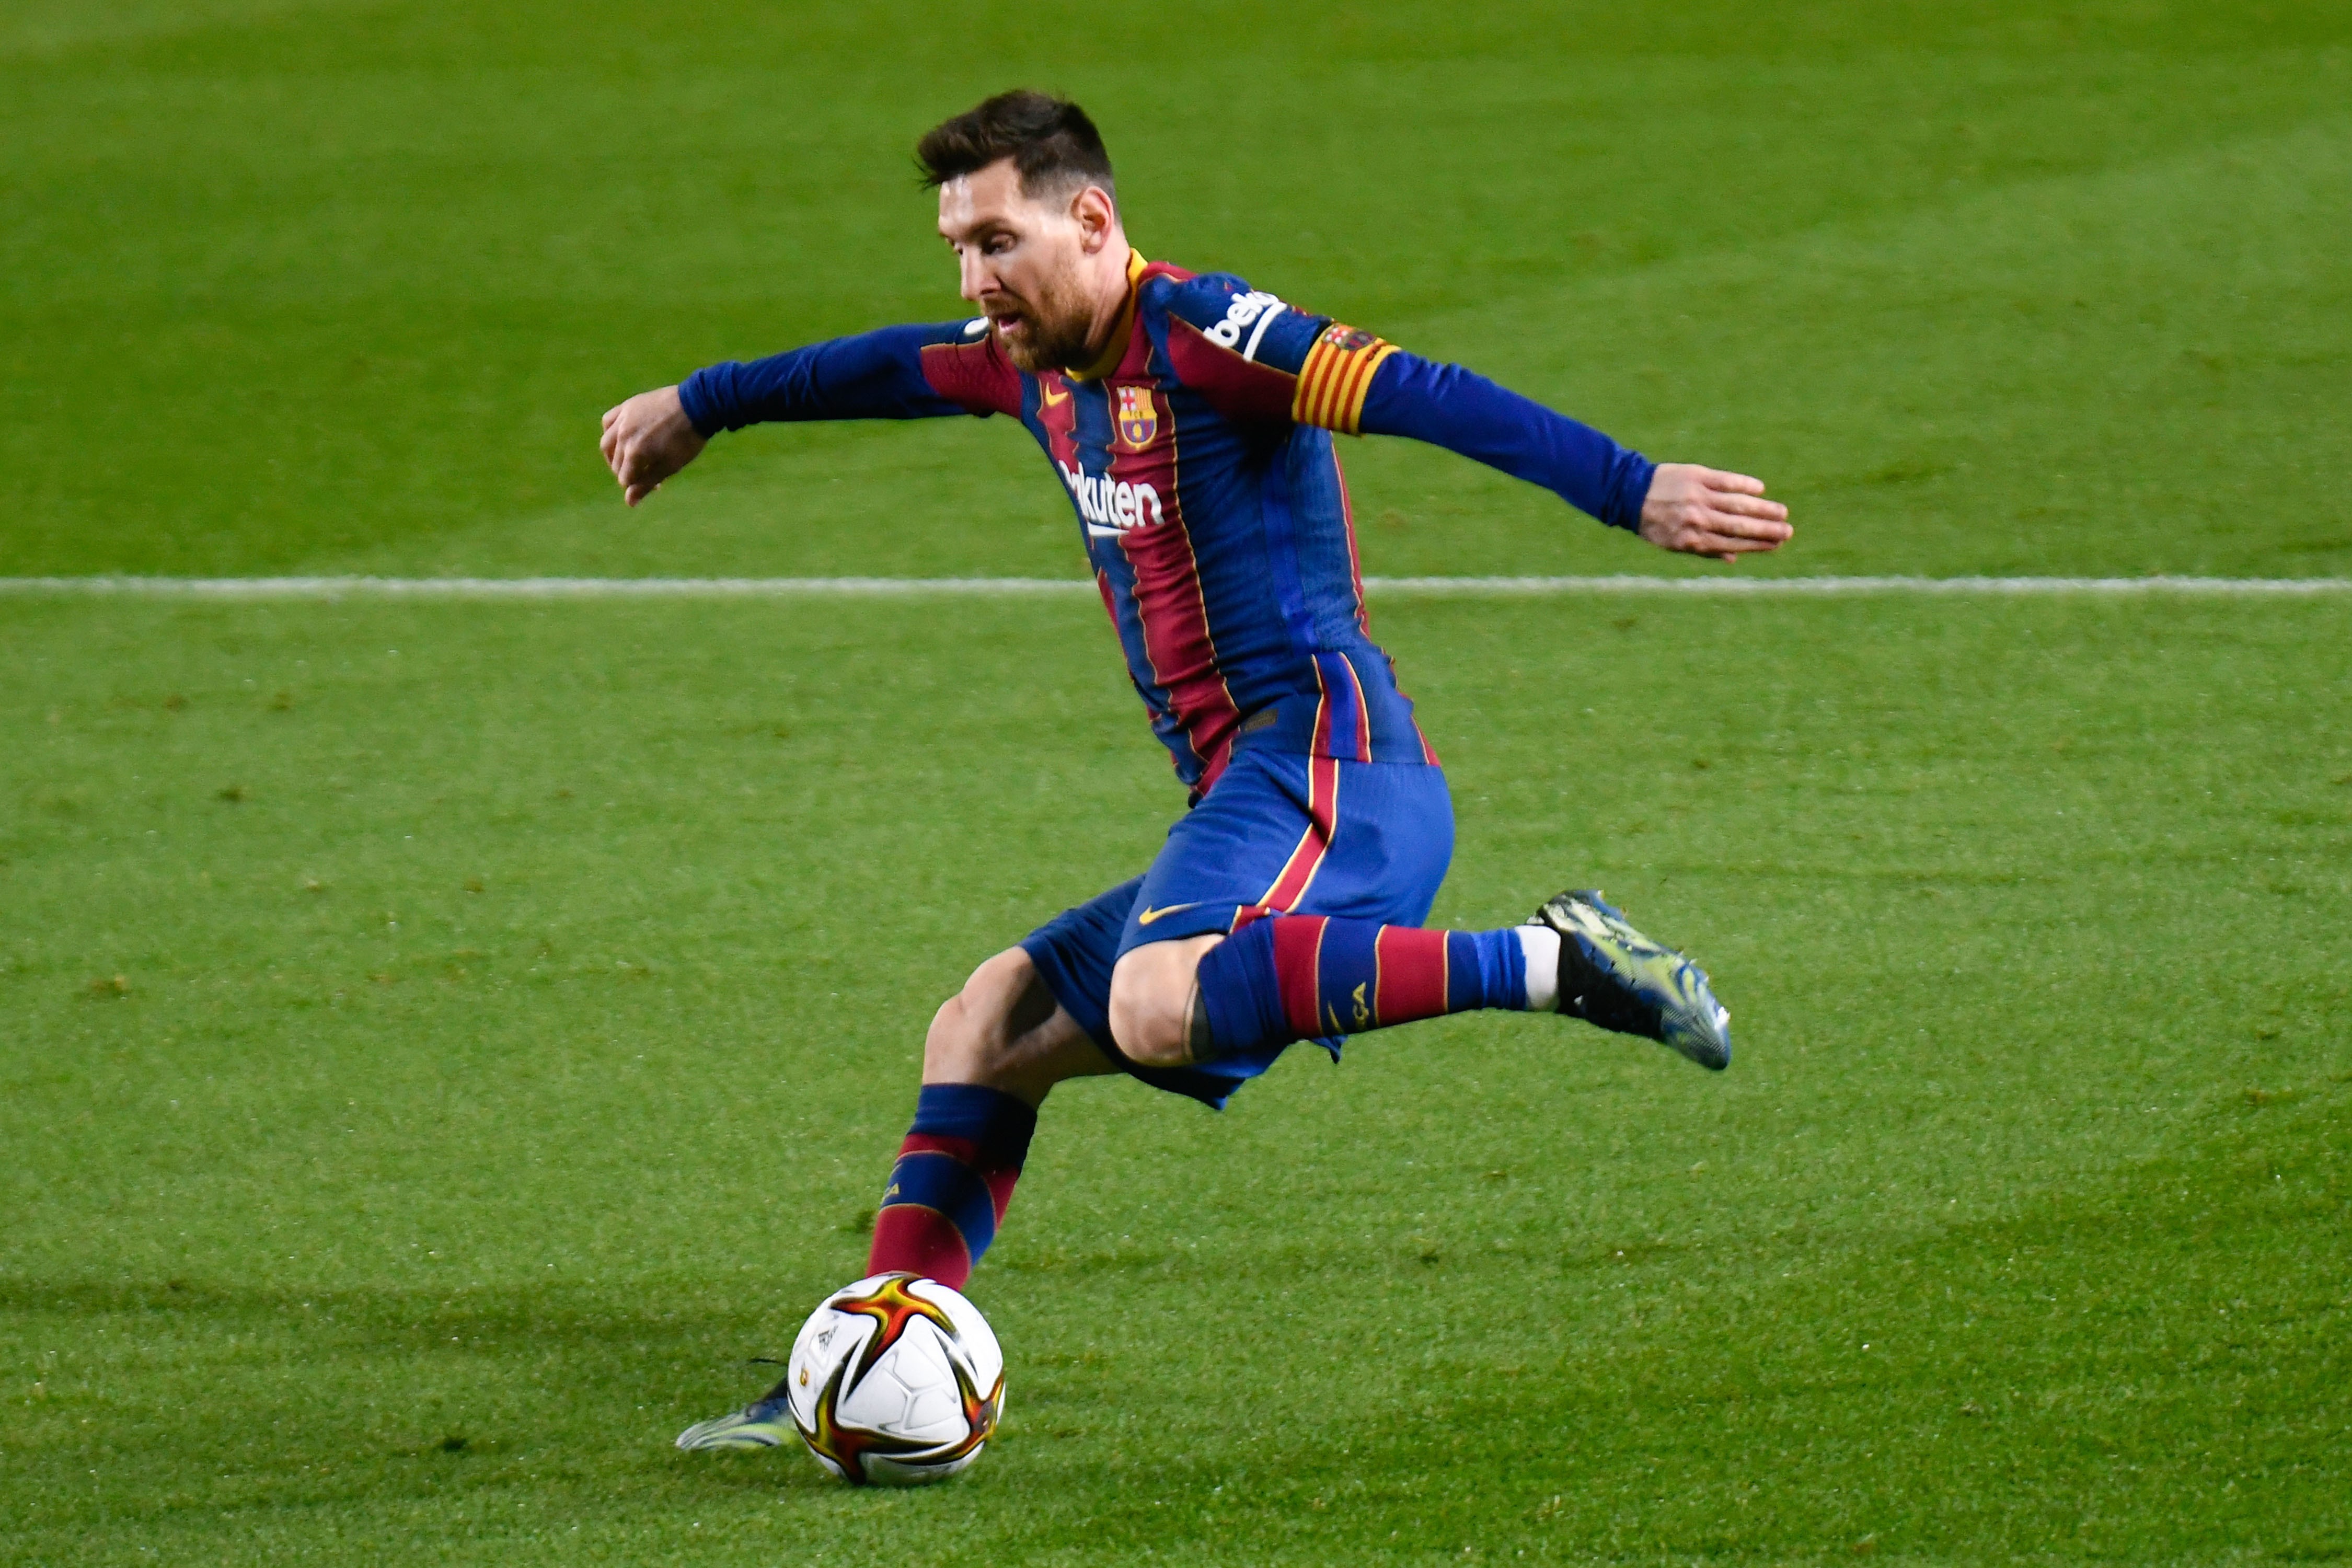 Et le prix du plus beau but de février est décerné à... Leo Messi !